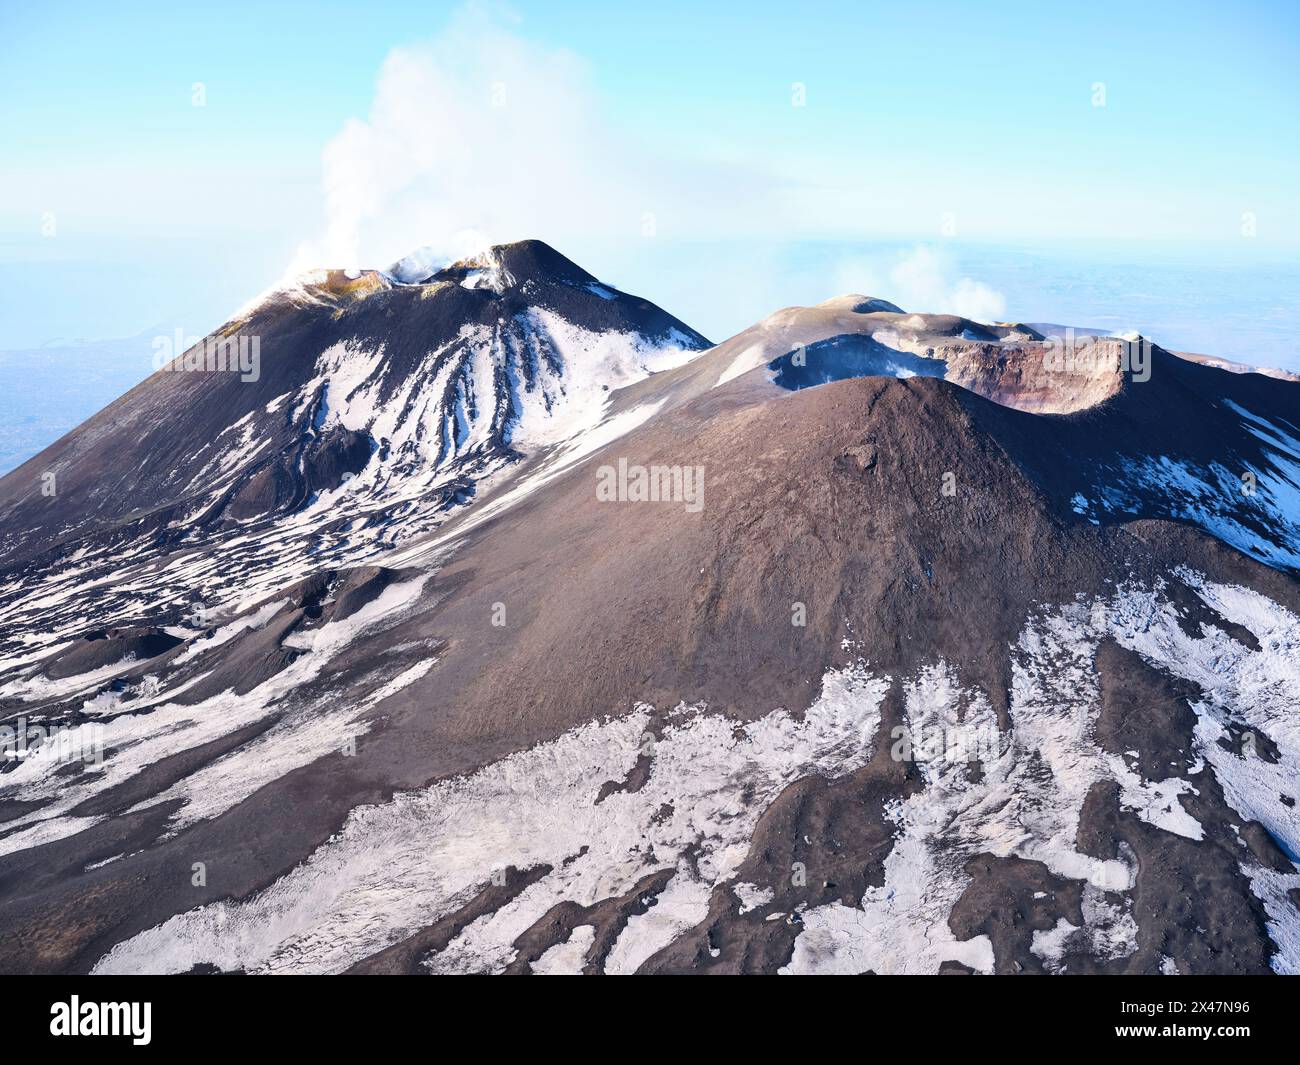 LUFTAUFNAHME. Der Gipfel des Ätna mit seinen fünf aktiven Kratern, von Norden aus gesehen. Metropolitan City of Catania, Sizilien, Italien. Stockfoto